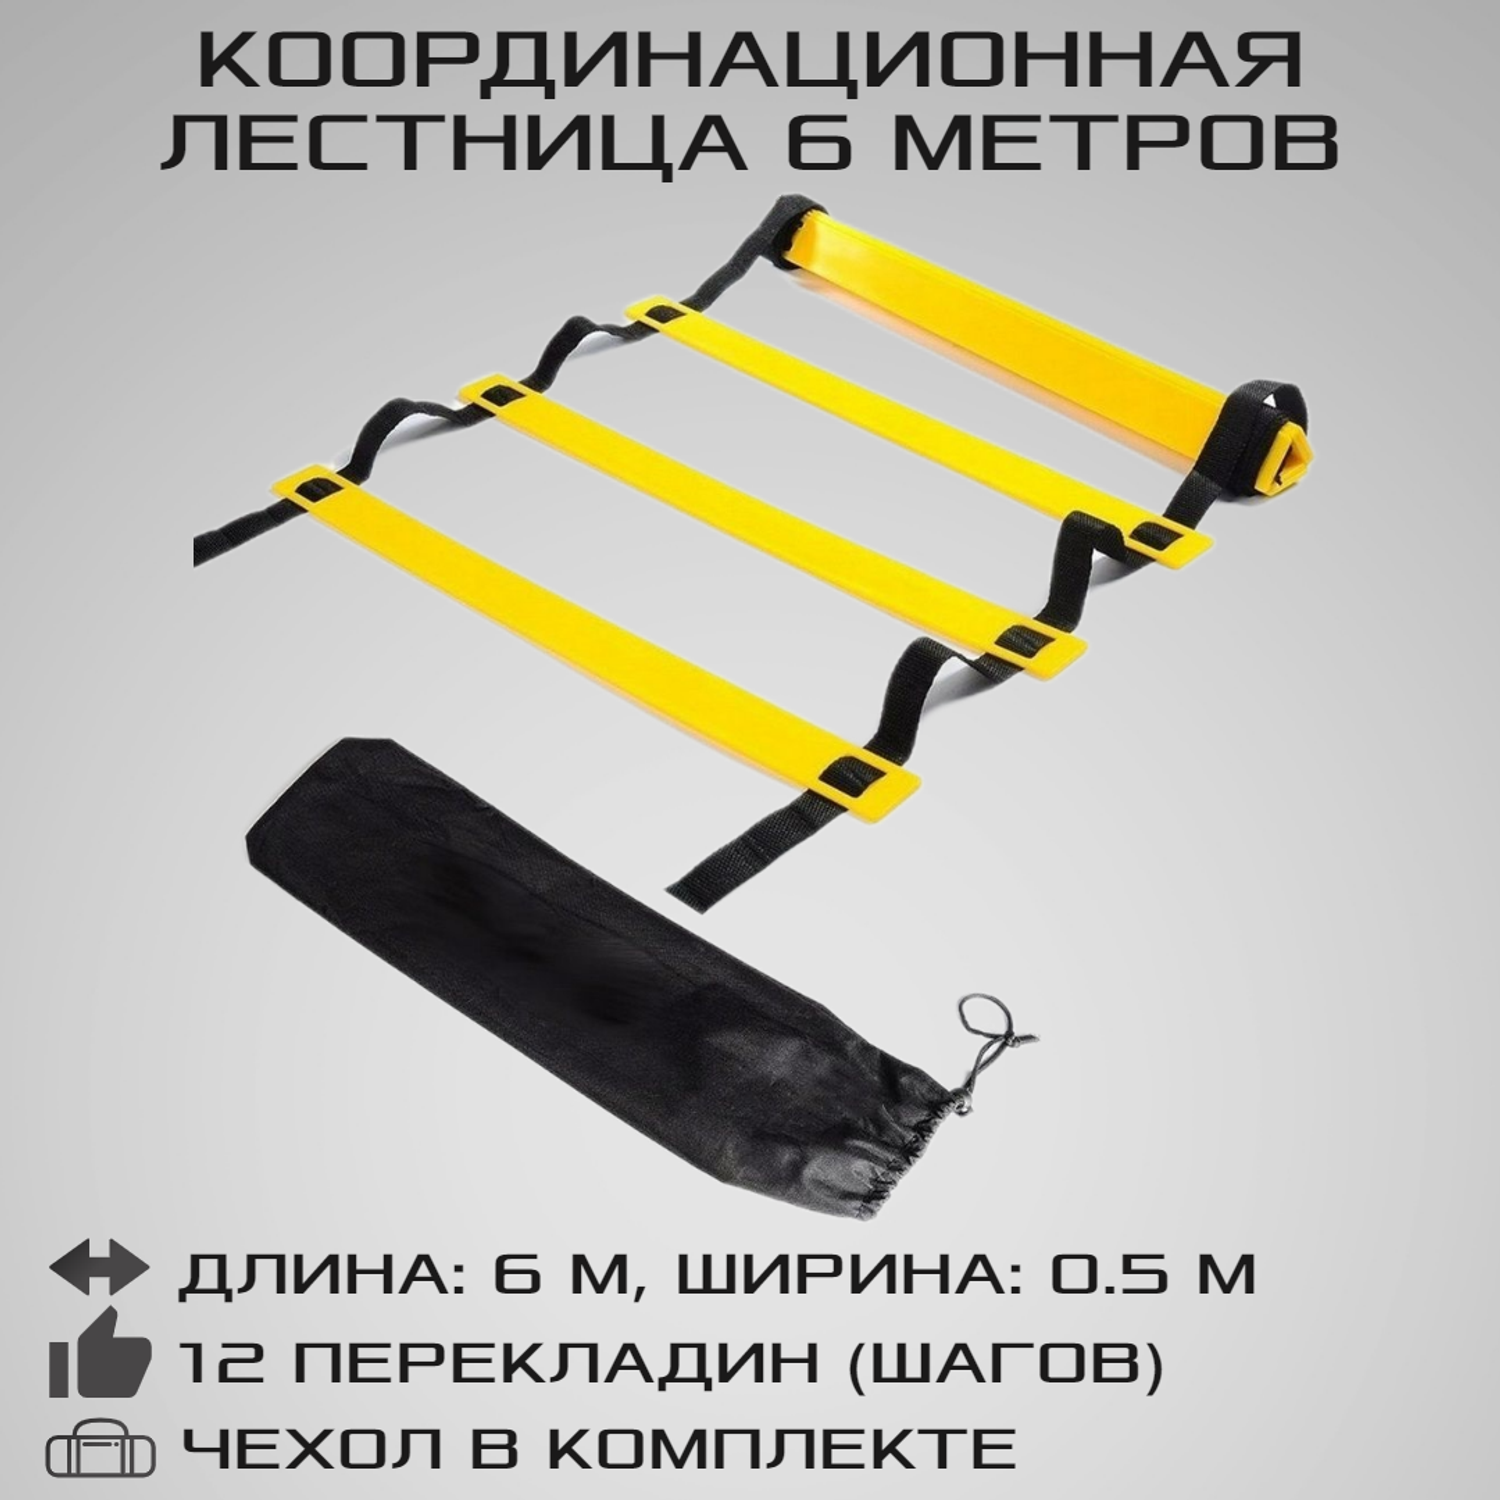 Координационная лестница STRONG BODY 6 метров 12 перекладин черно-желтая - фото 1